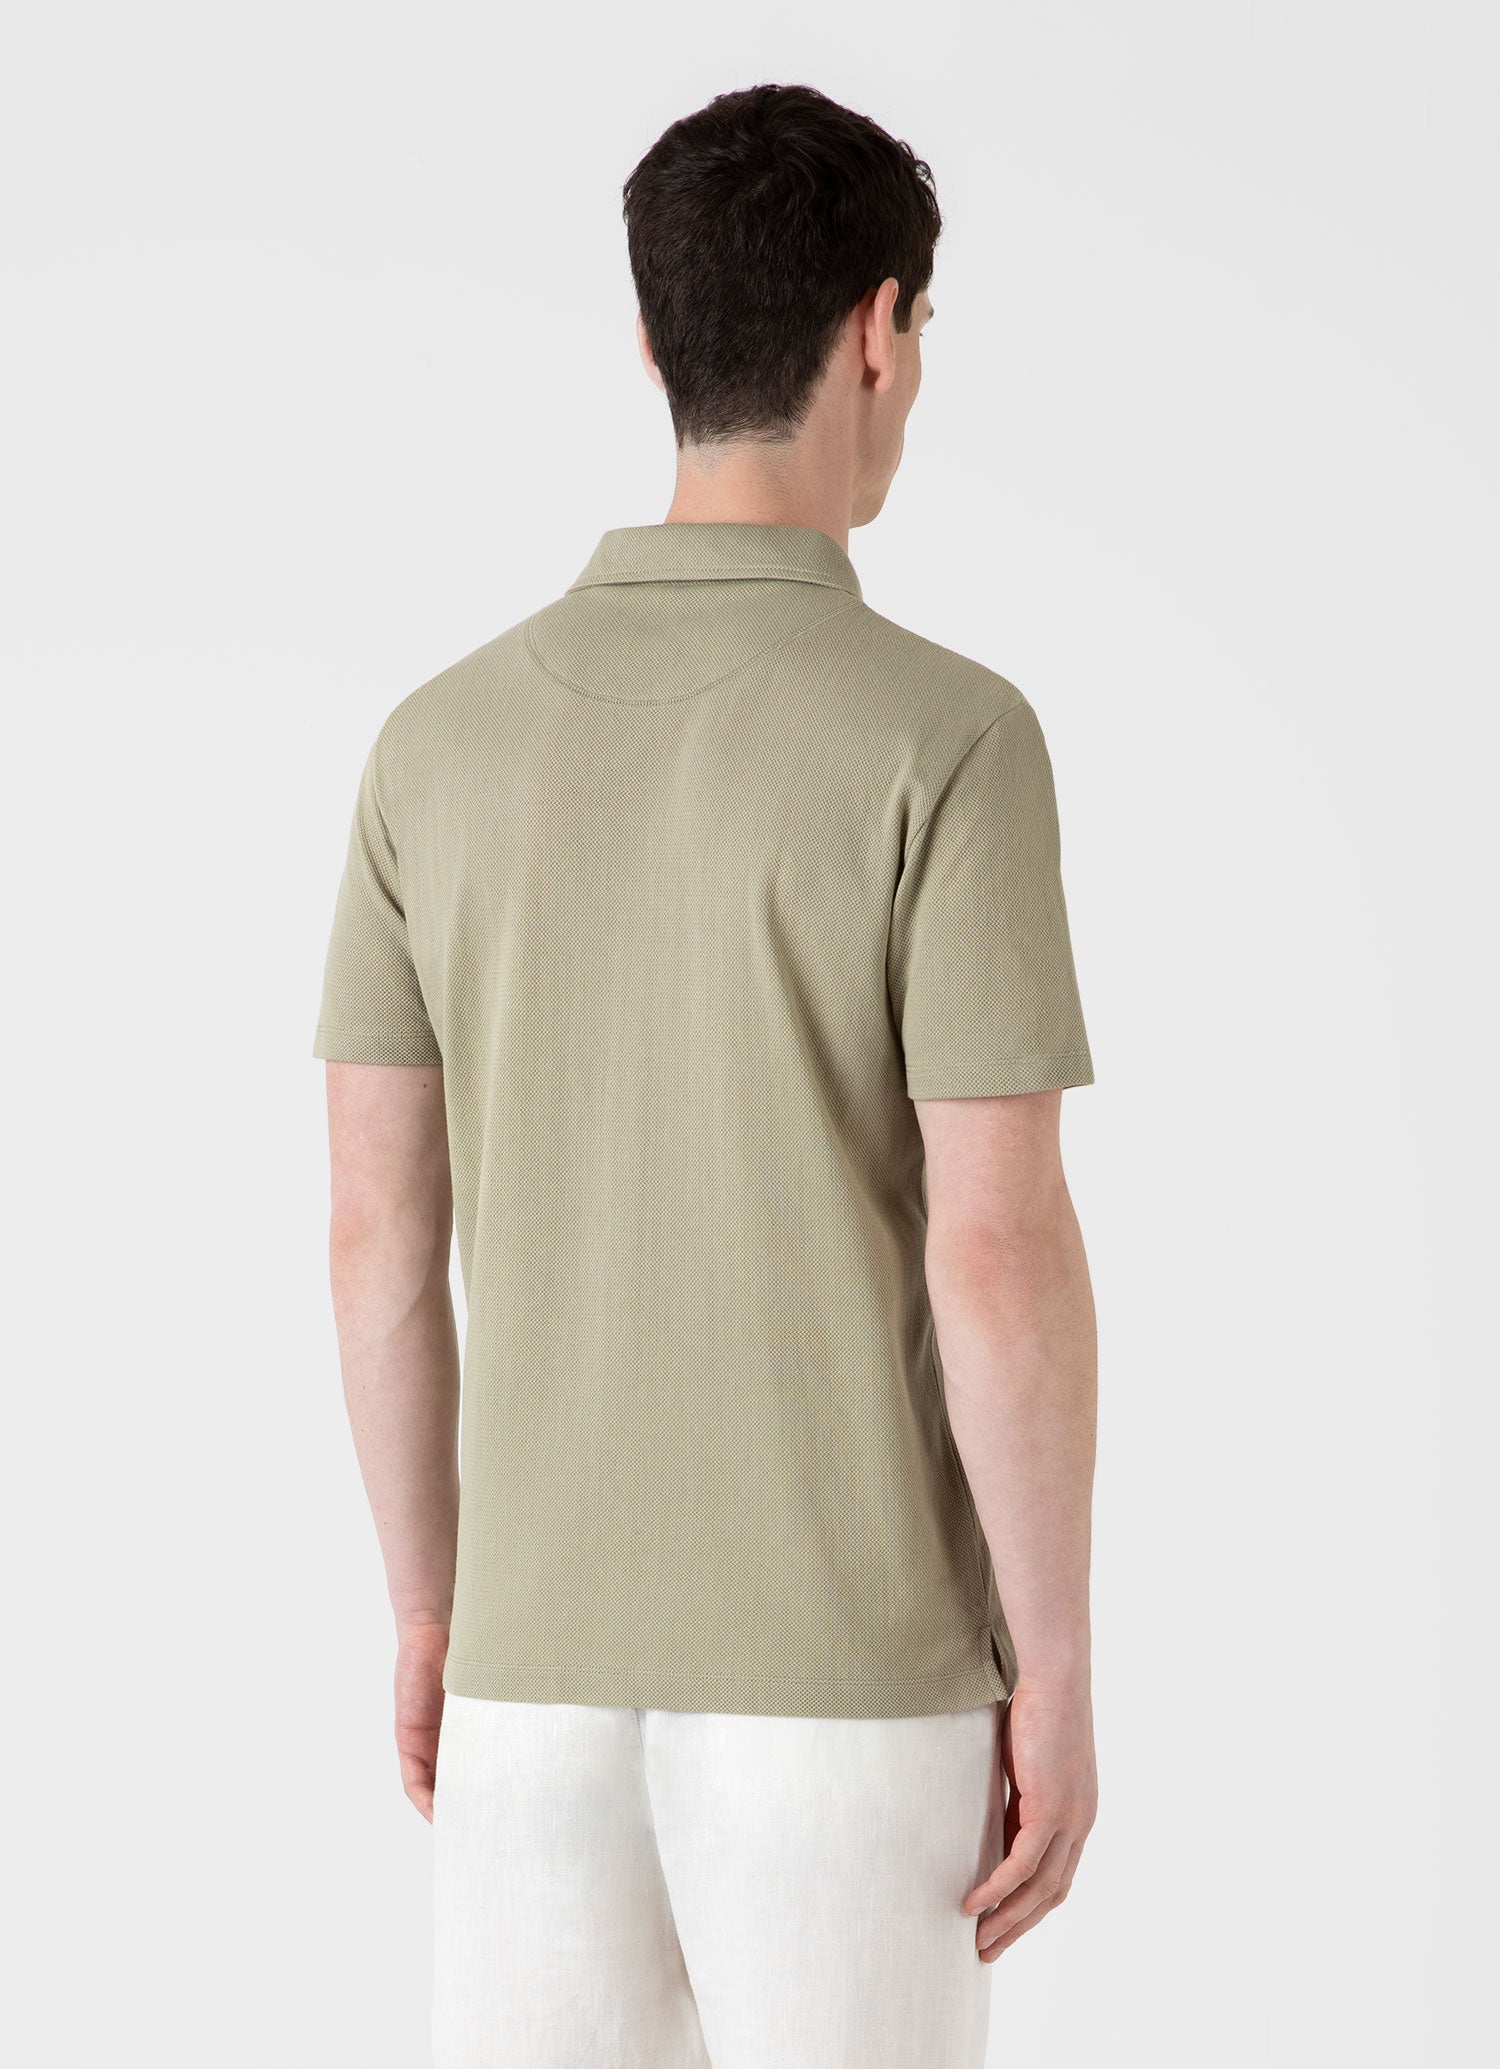 Men's Riviera Polo Shirt in Pale Khaki